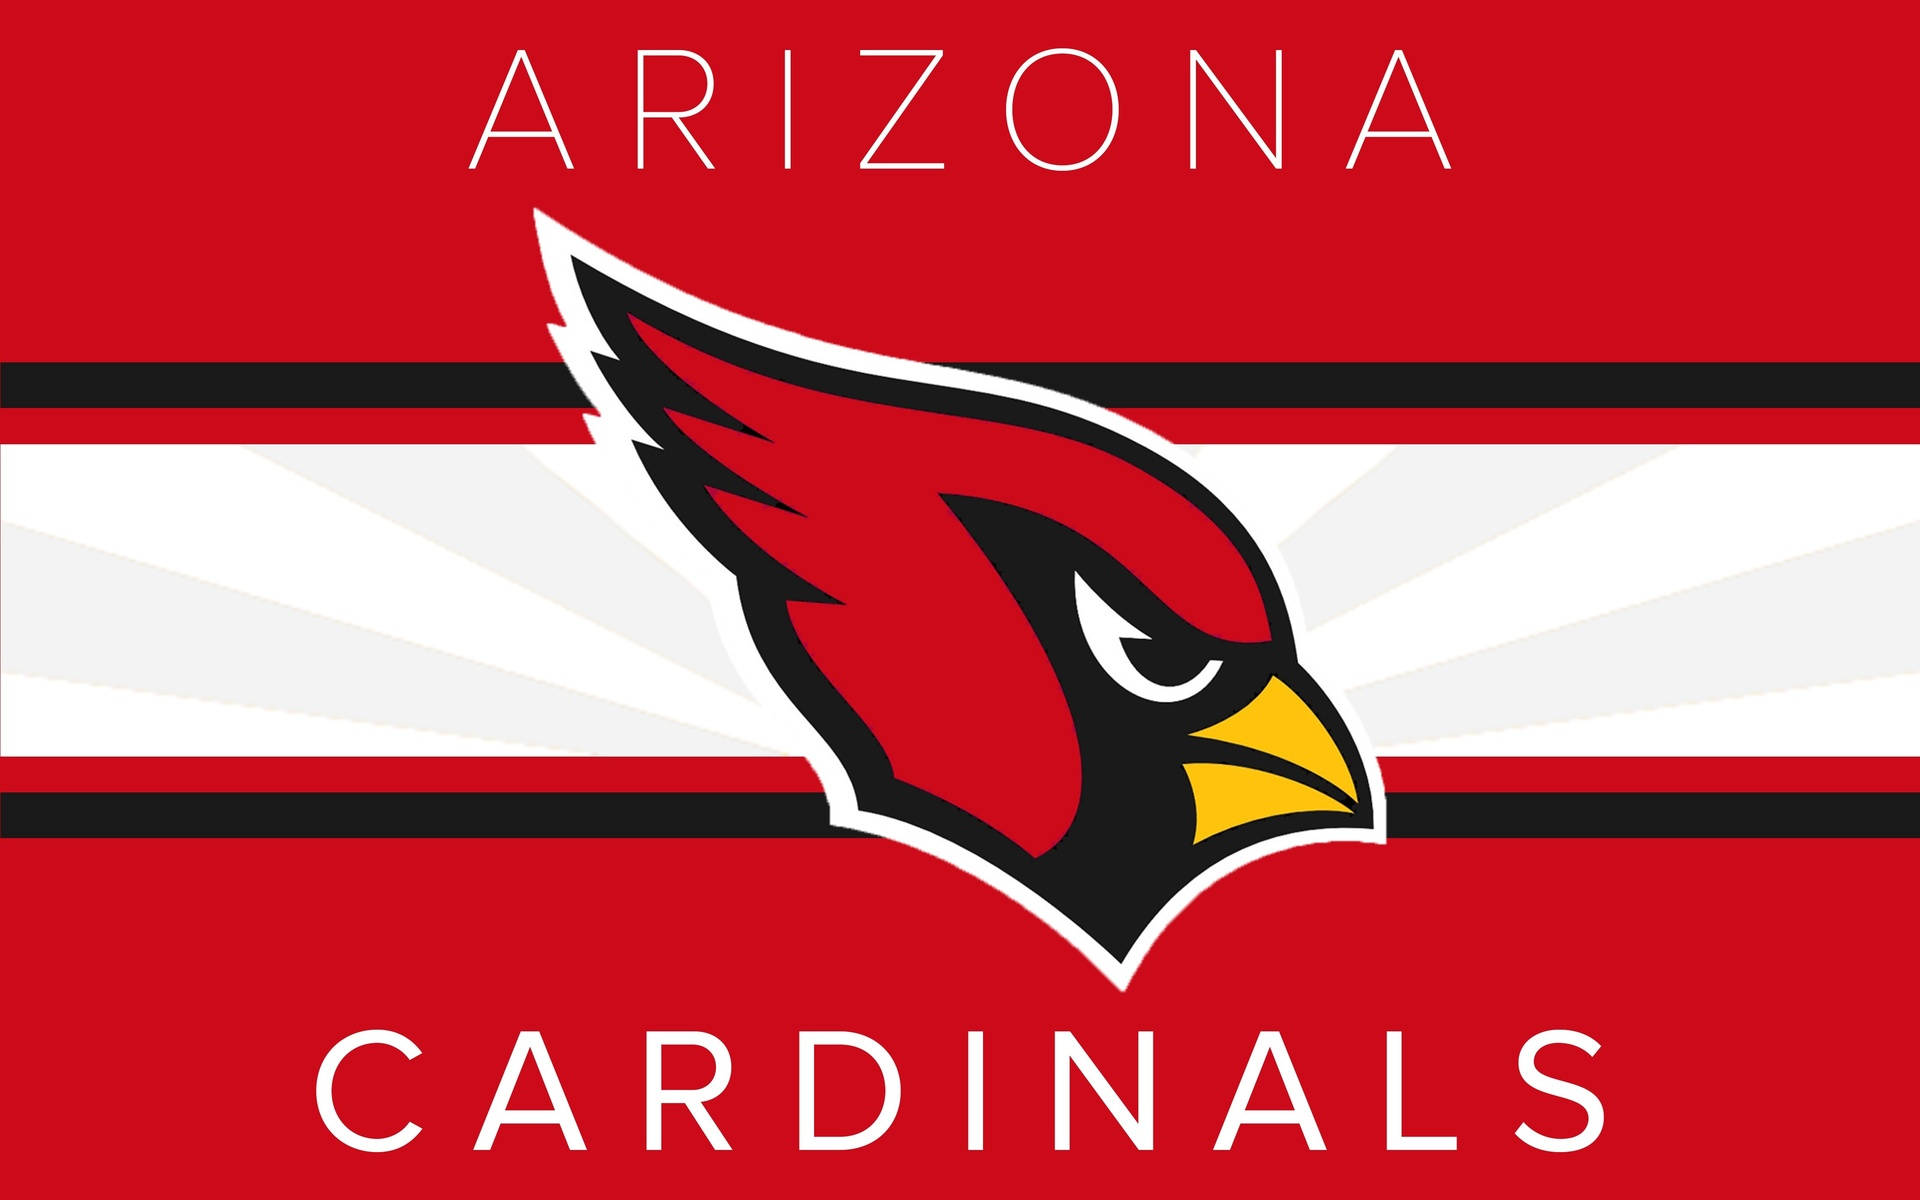 Arizona Cardinals Big Red Flag